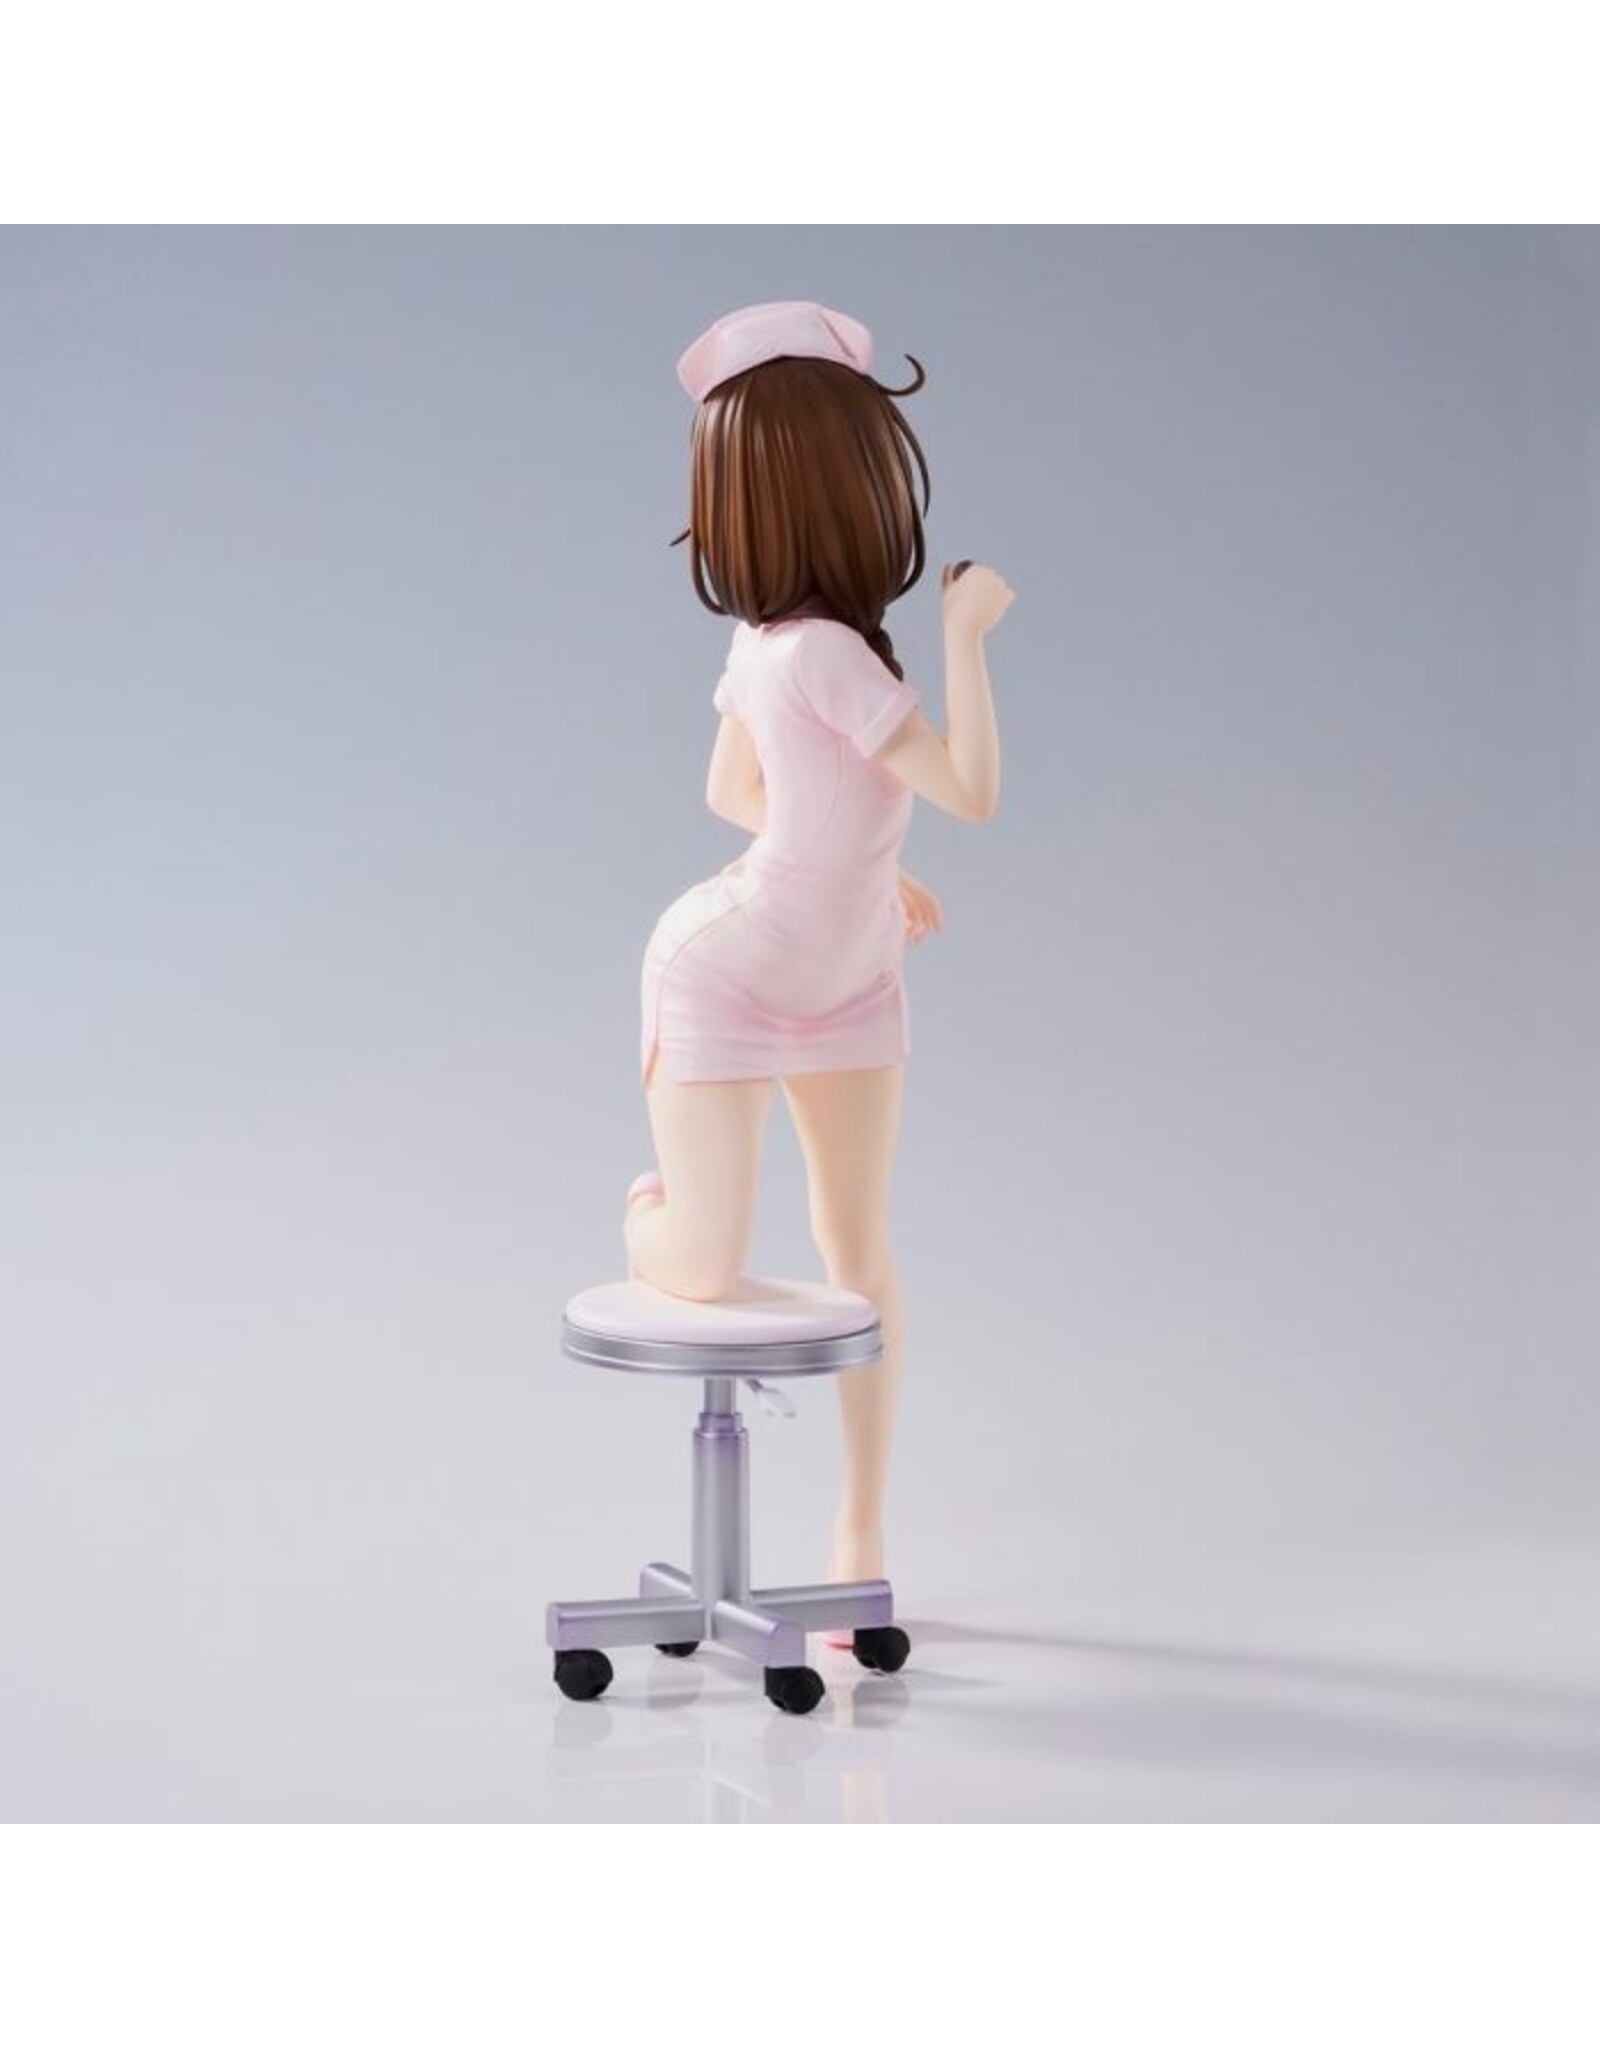 To Love Ru Darkness Mikan Yuuki Nurse Cosplay Figure *Pre-Order* *DEPOSIT ONLY*